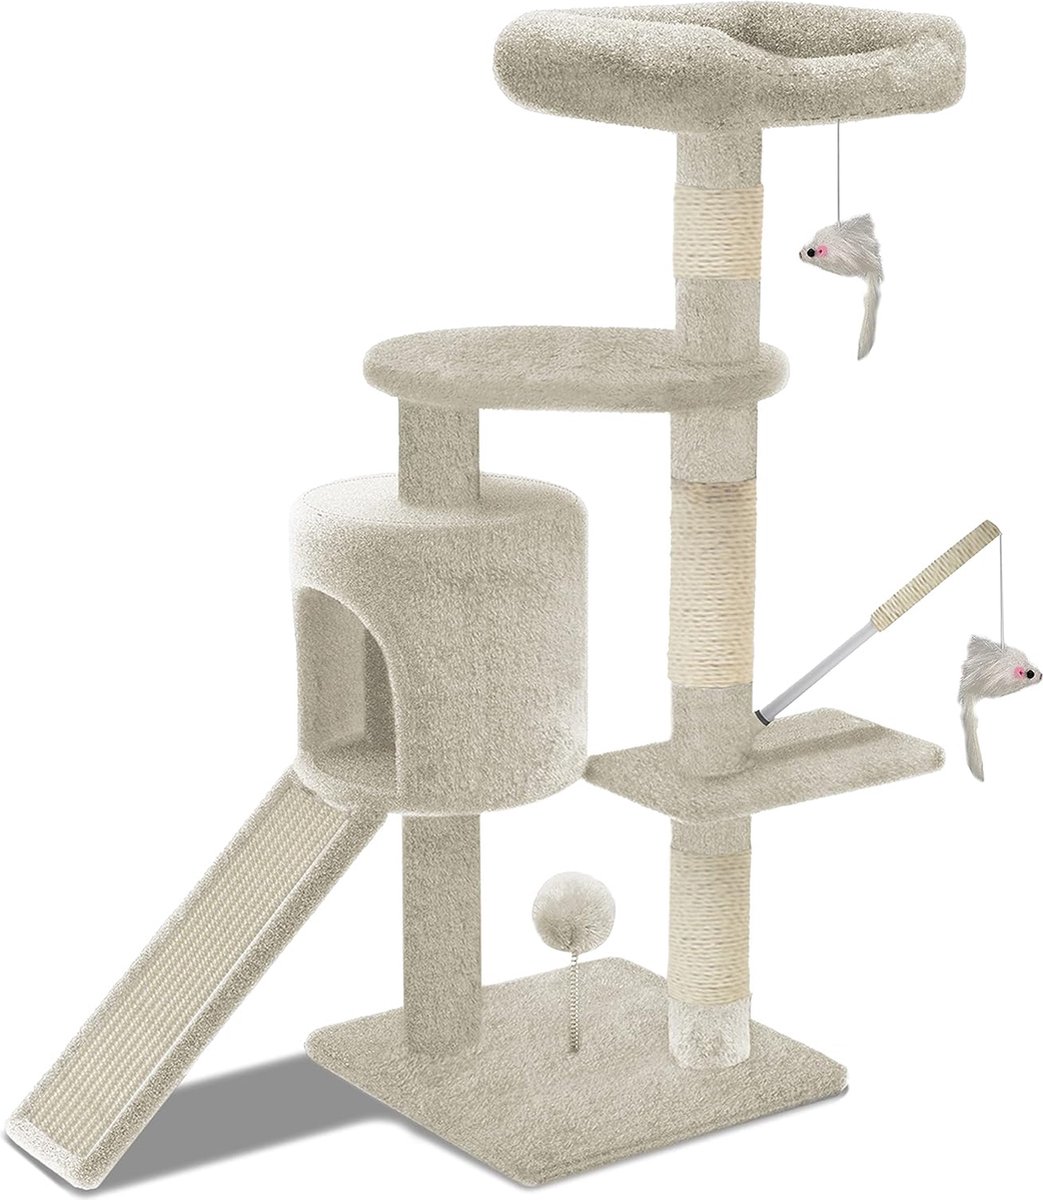 Krabpaal met klimboom voor katten - activiteitencentrum - huisje en platforms voor katten - hoogte 112 cm - beige